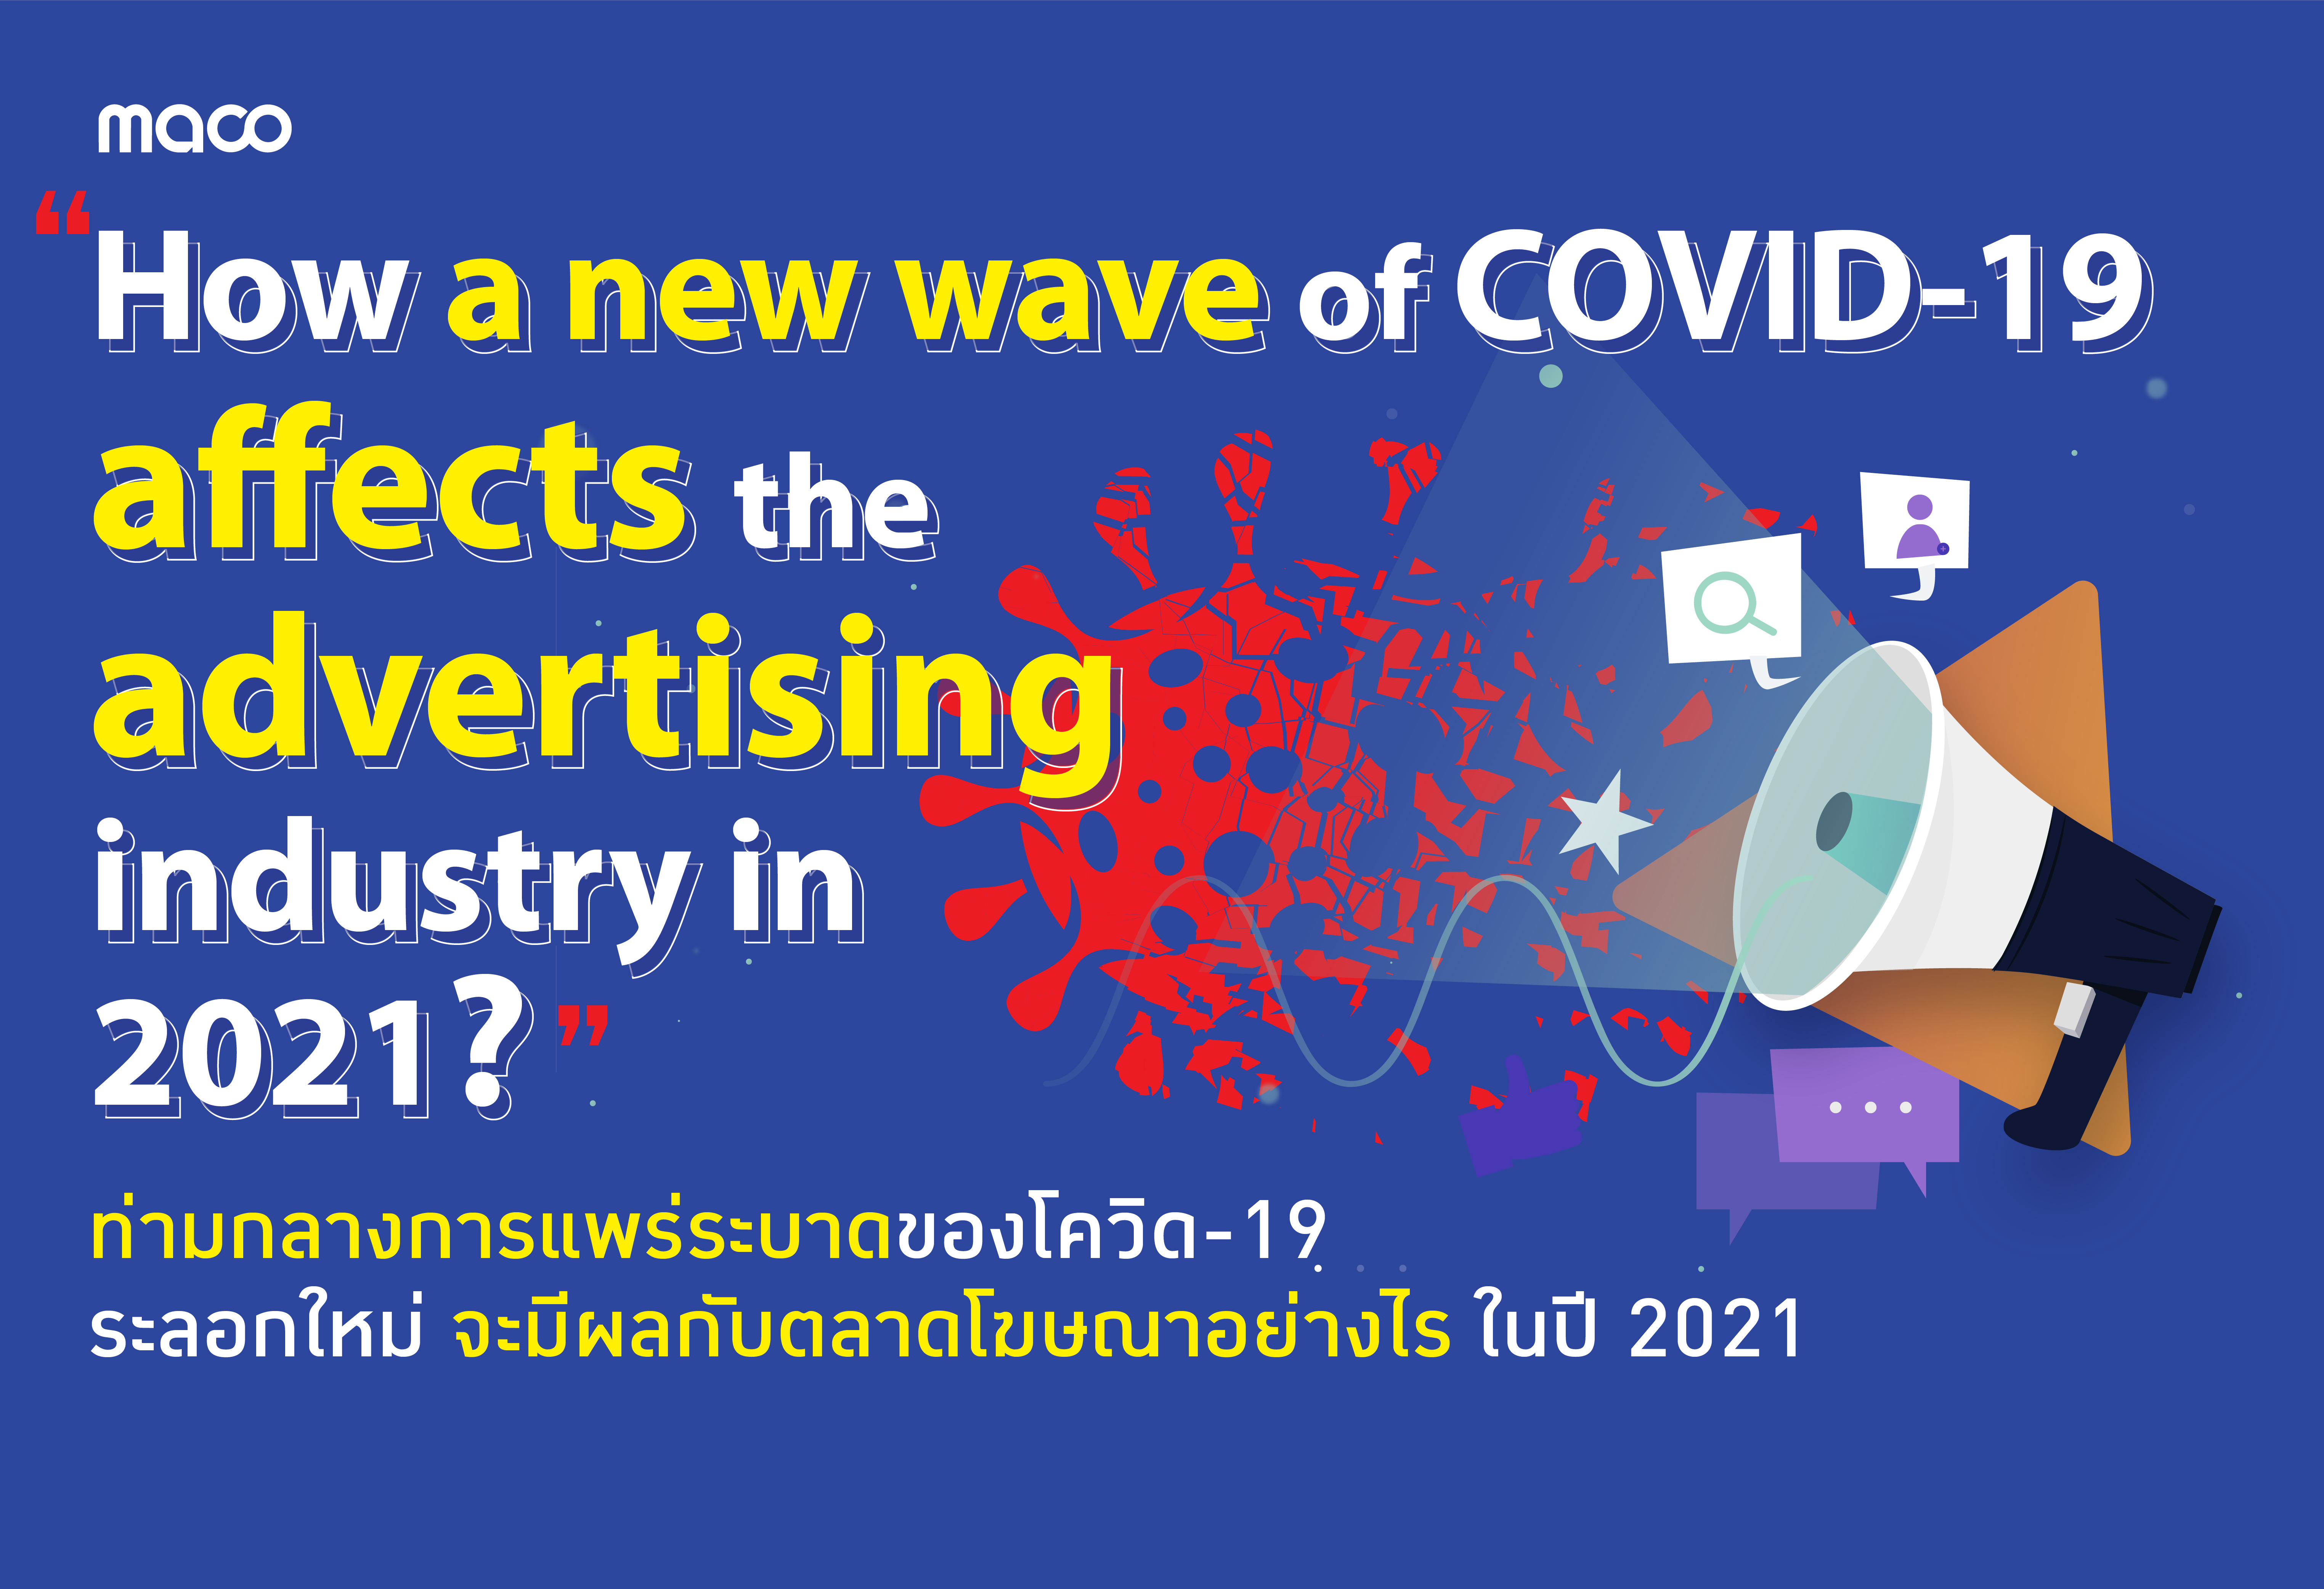 ท่ามกลางการแพร่ระบาดของโควิด-19 ระลอกใหม่ จะมีผลกับตลาดโฆษณาอย่างไร ในปี 2021 